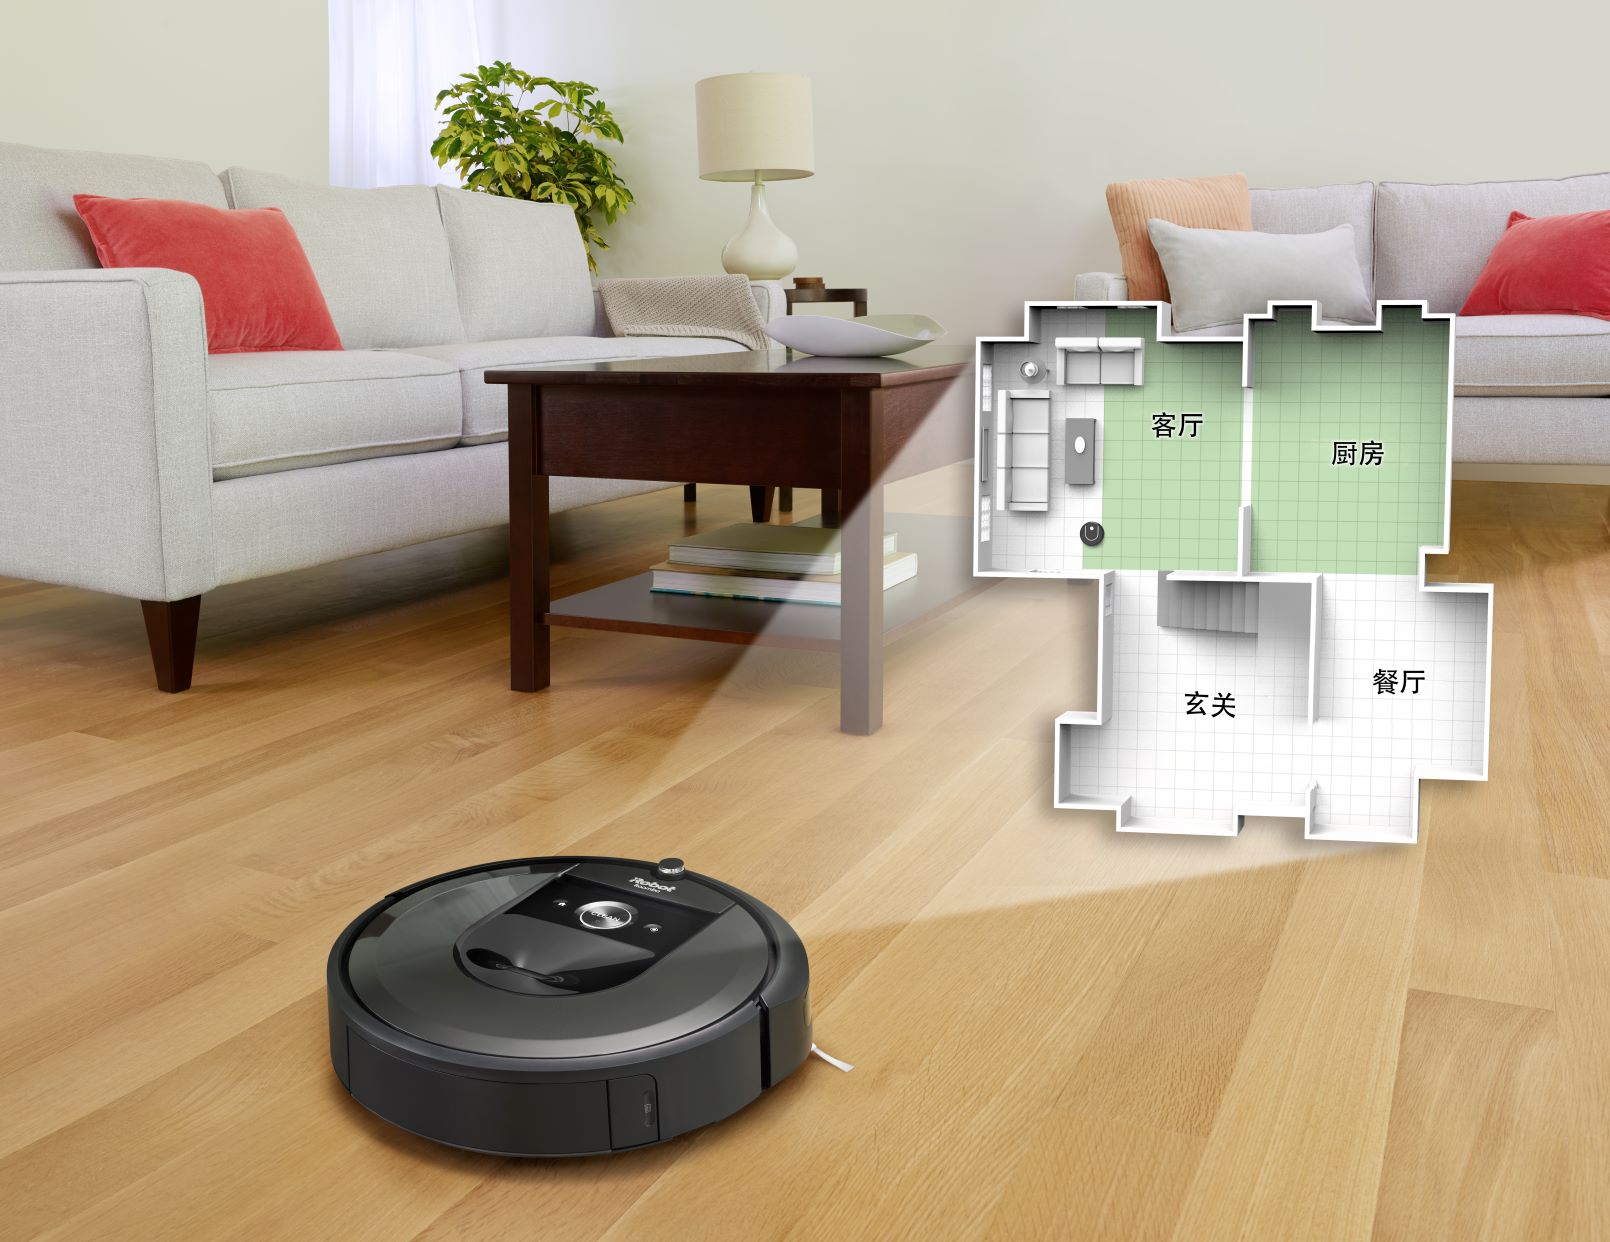 超越铲屎官期望的扫地机器人iRobot Roomba i7+